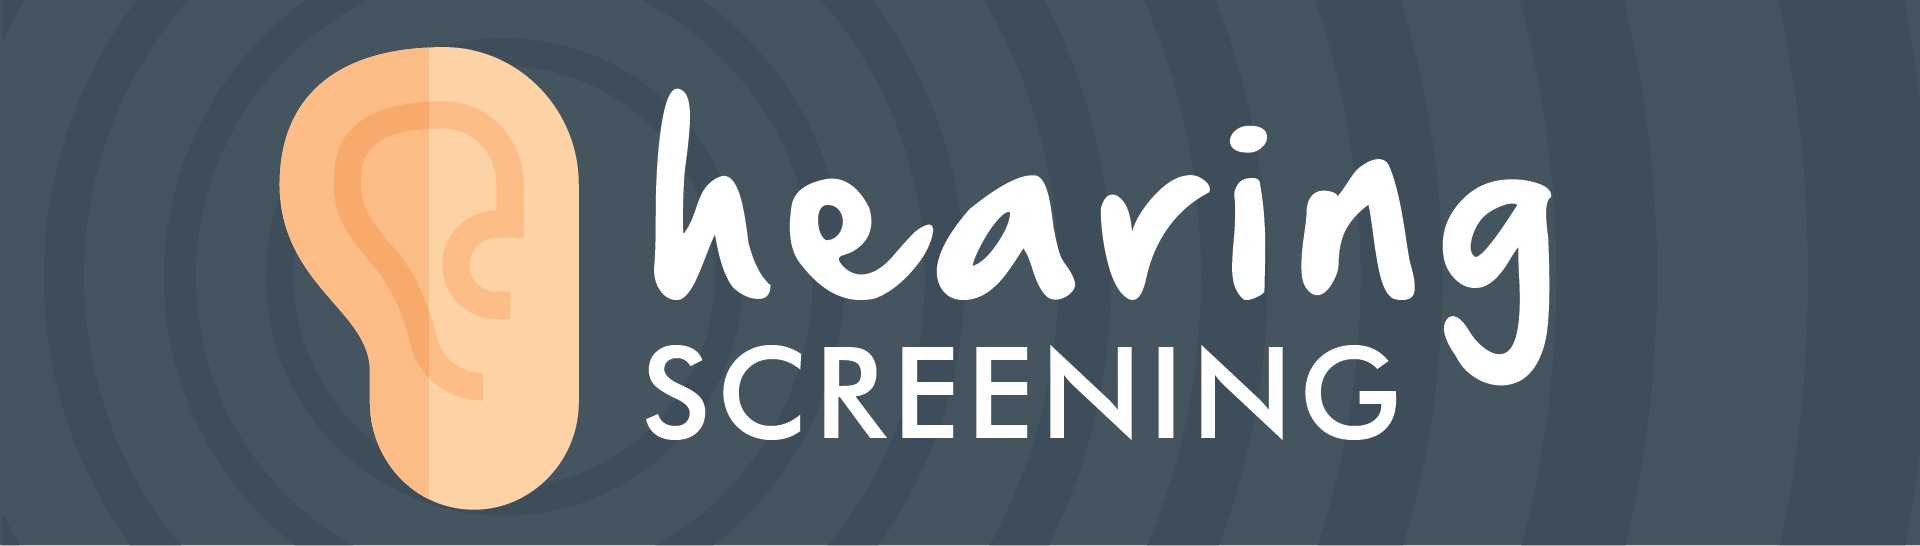 Hearing_Screening_Graphic